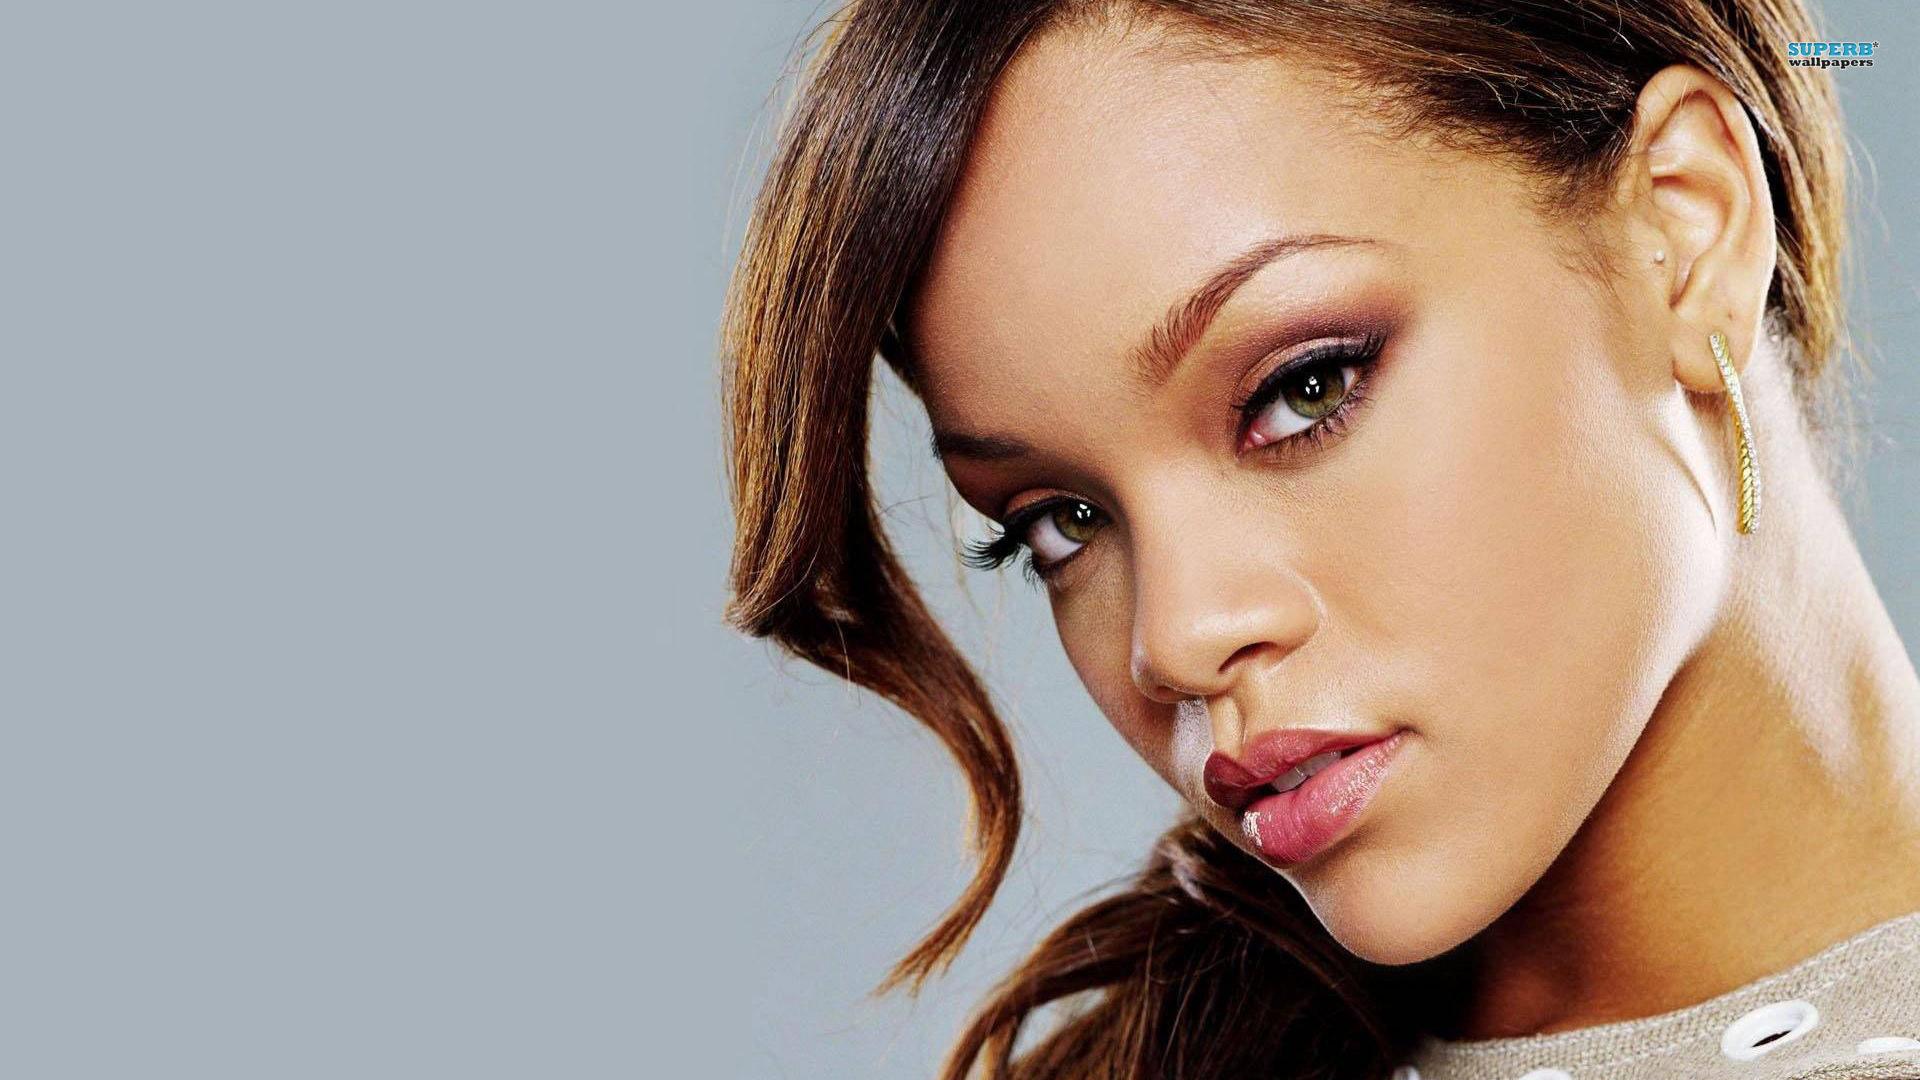 Wallpaper- Rihanna -Female Singer Wallpaper Background in 4k